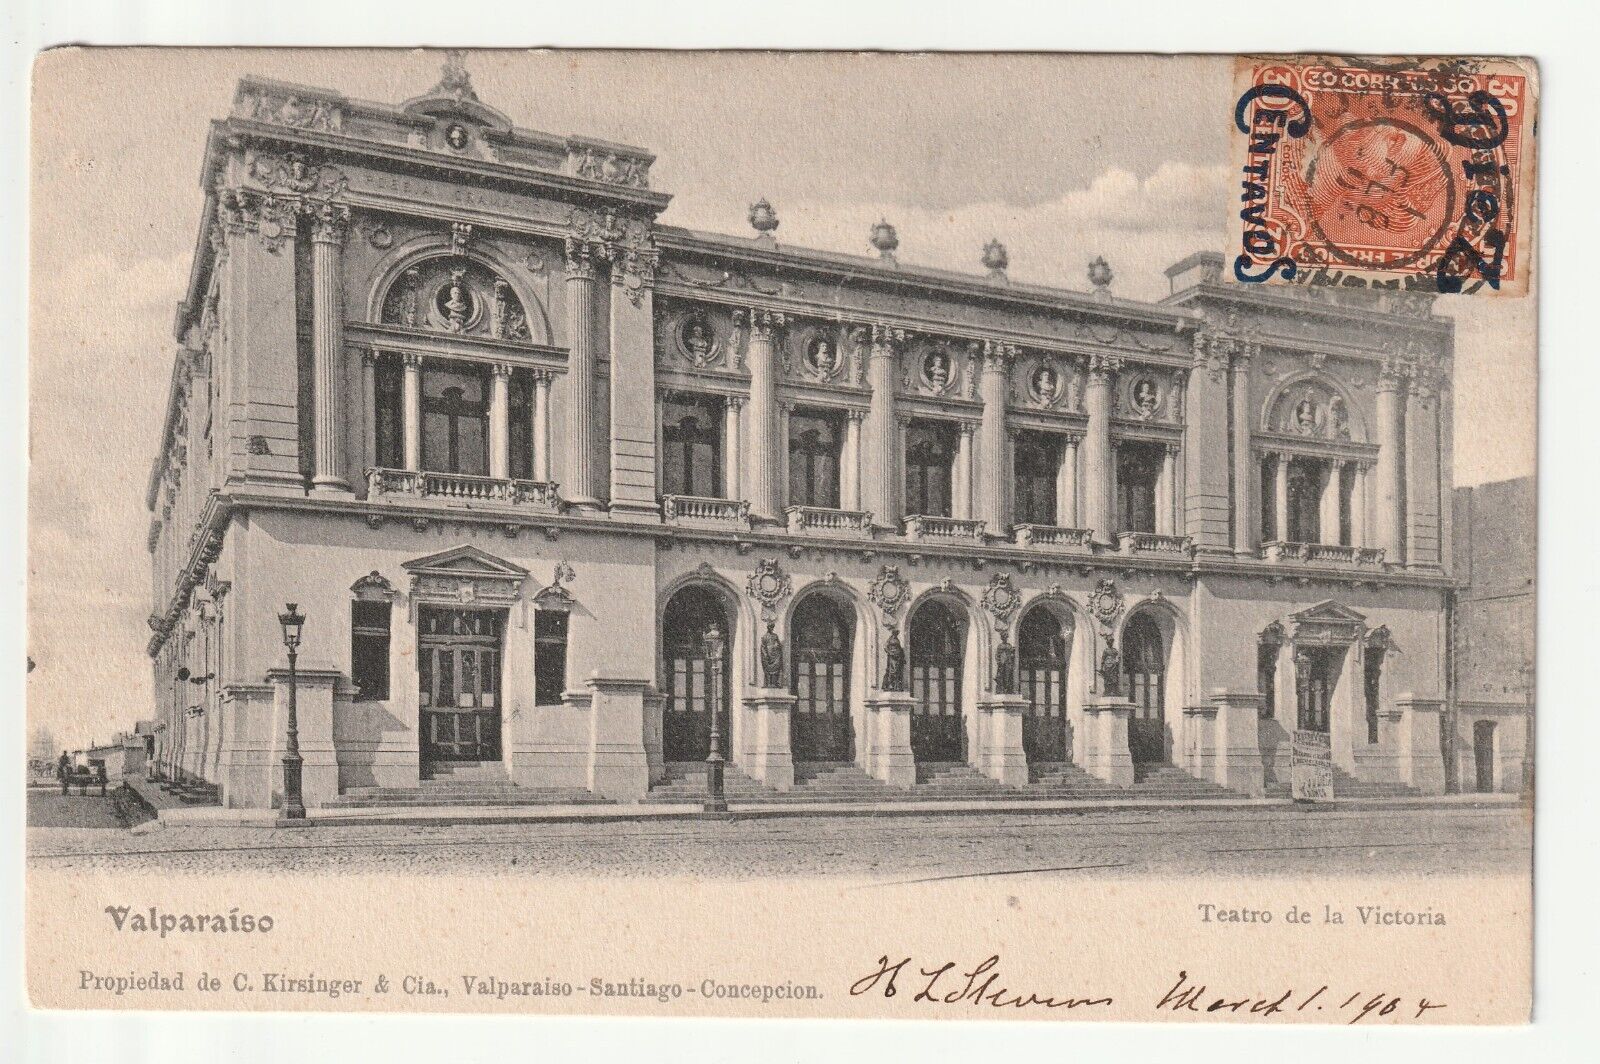 CHILI - CHILE - Old Postcard - VALPARAISO Teatro de la Victoria